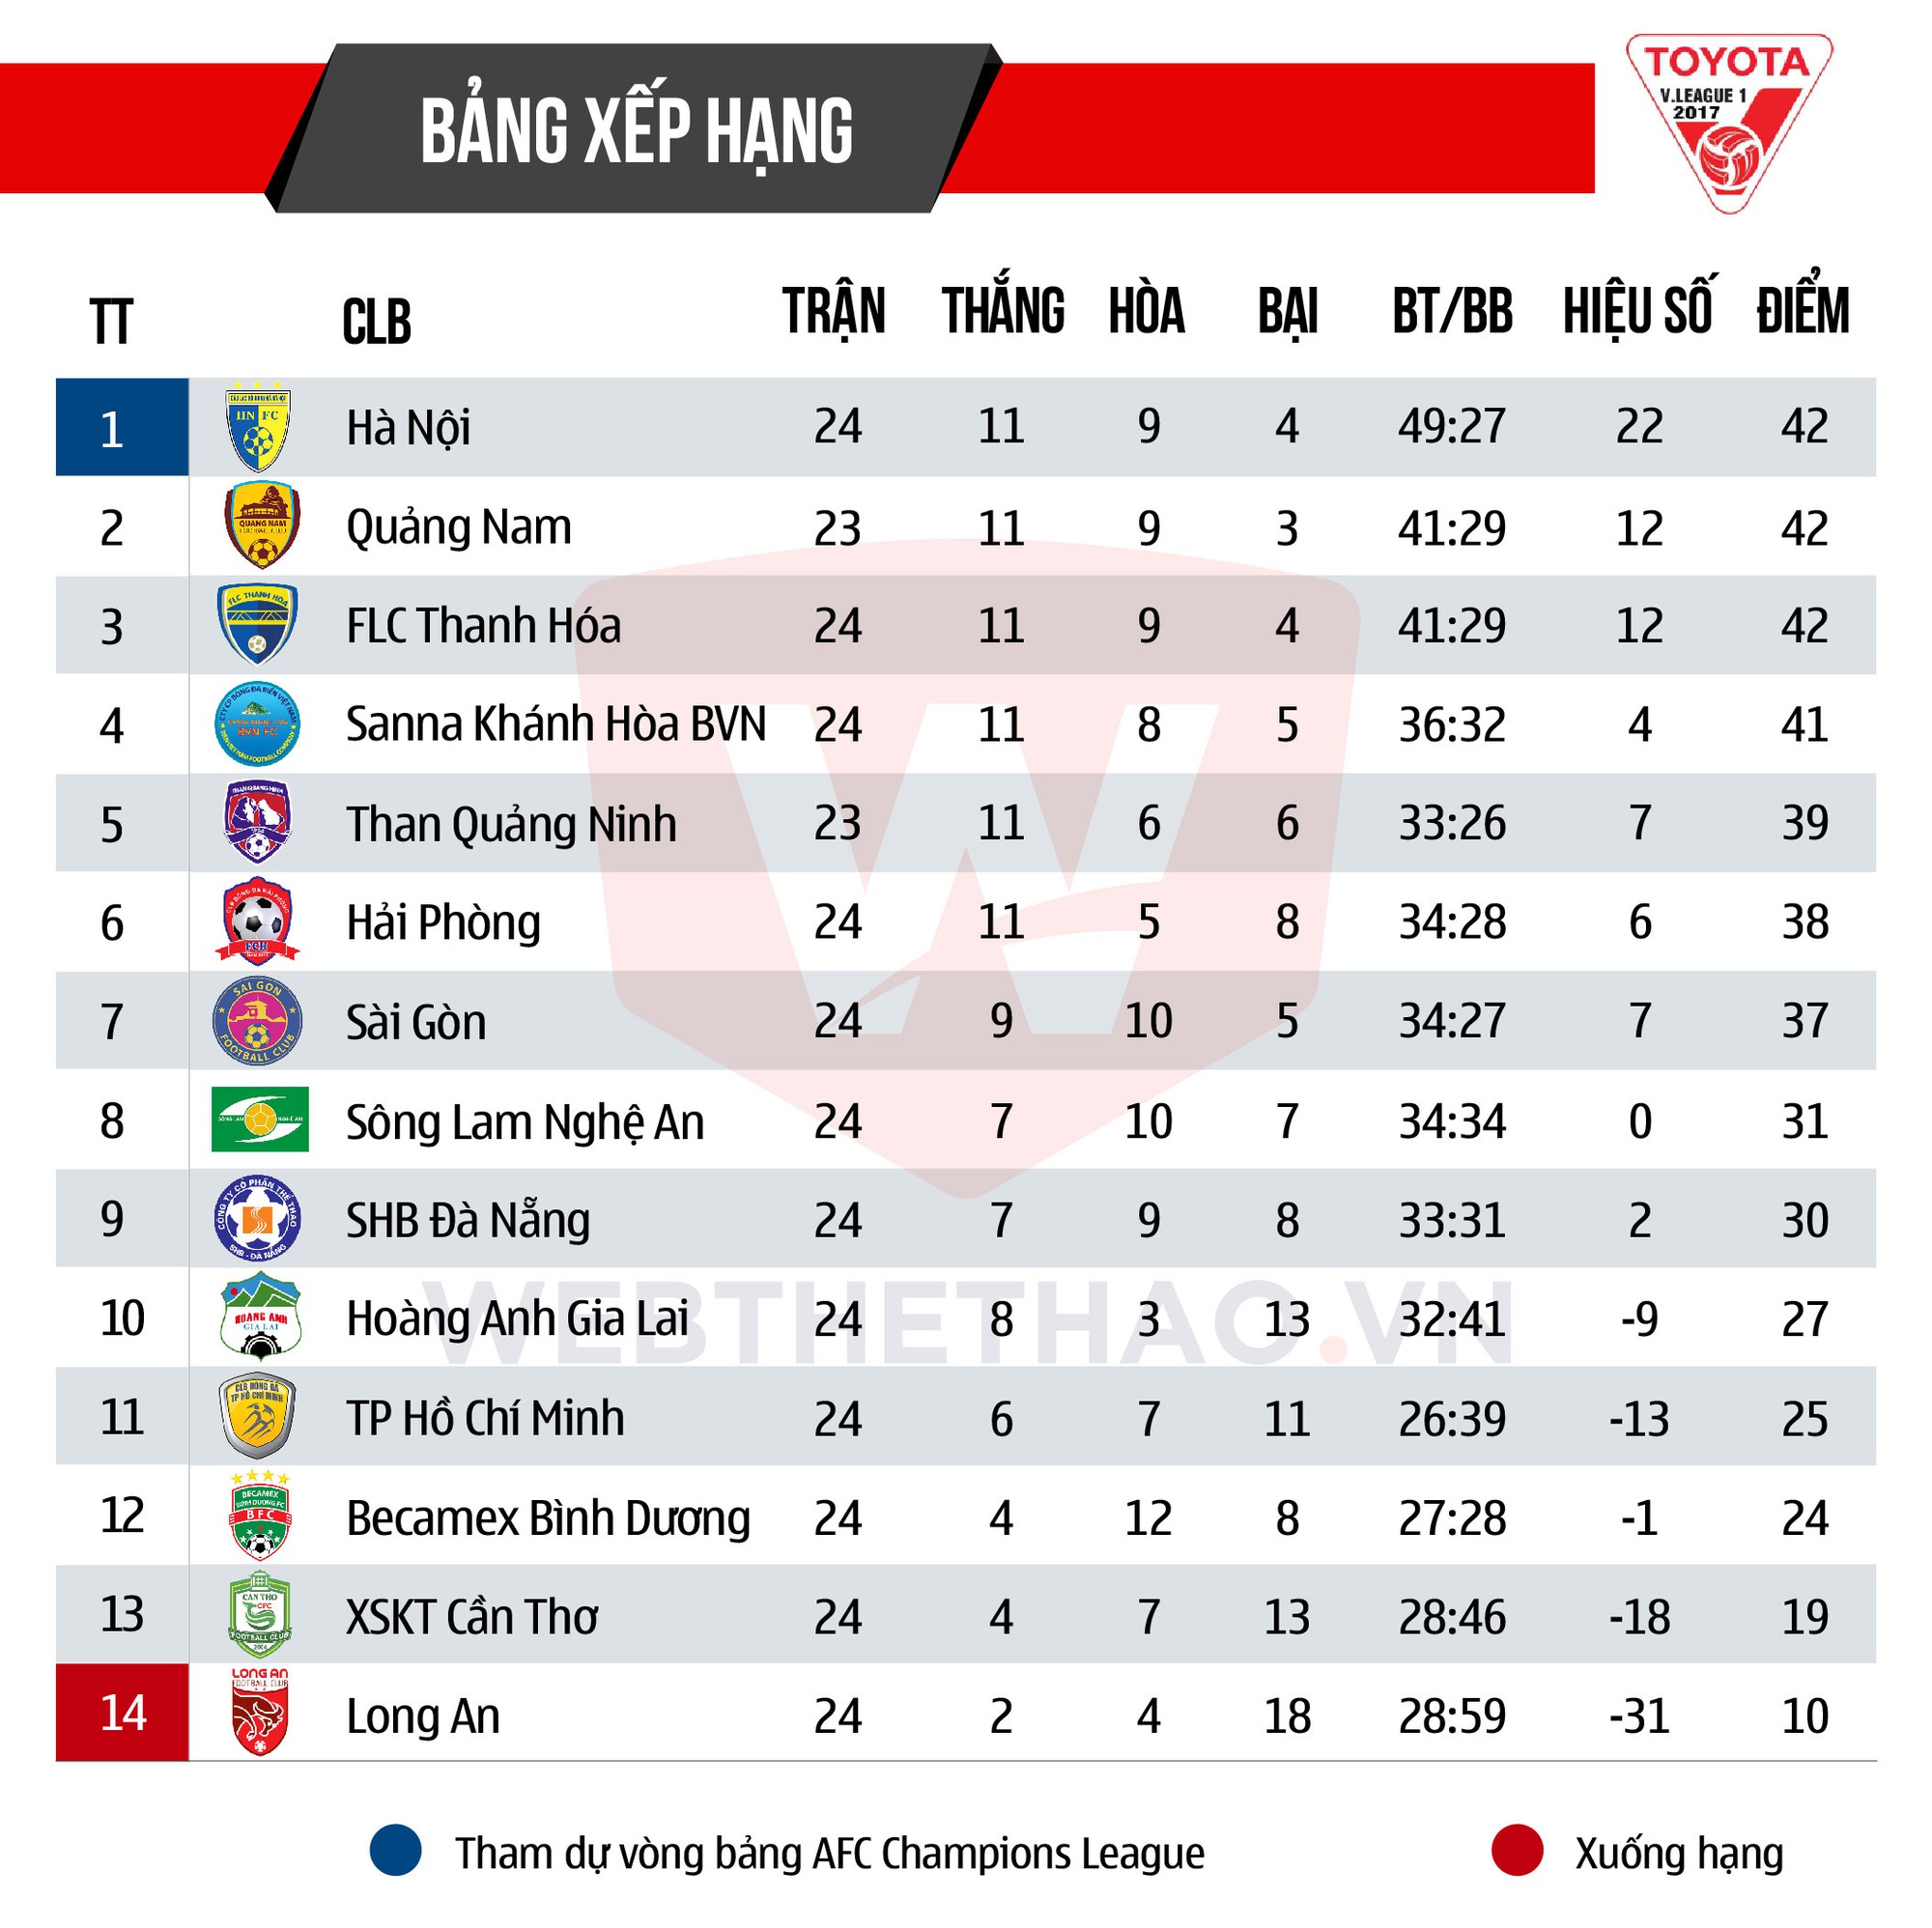 Bảng xếp hạng trước vòng 25 V.League 2017.